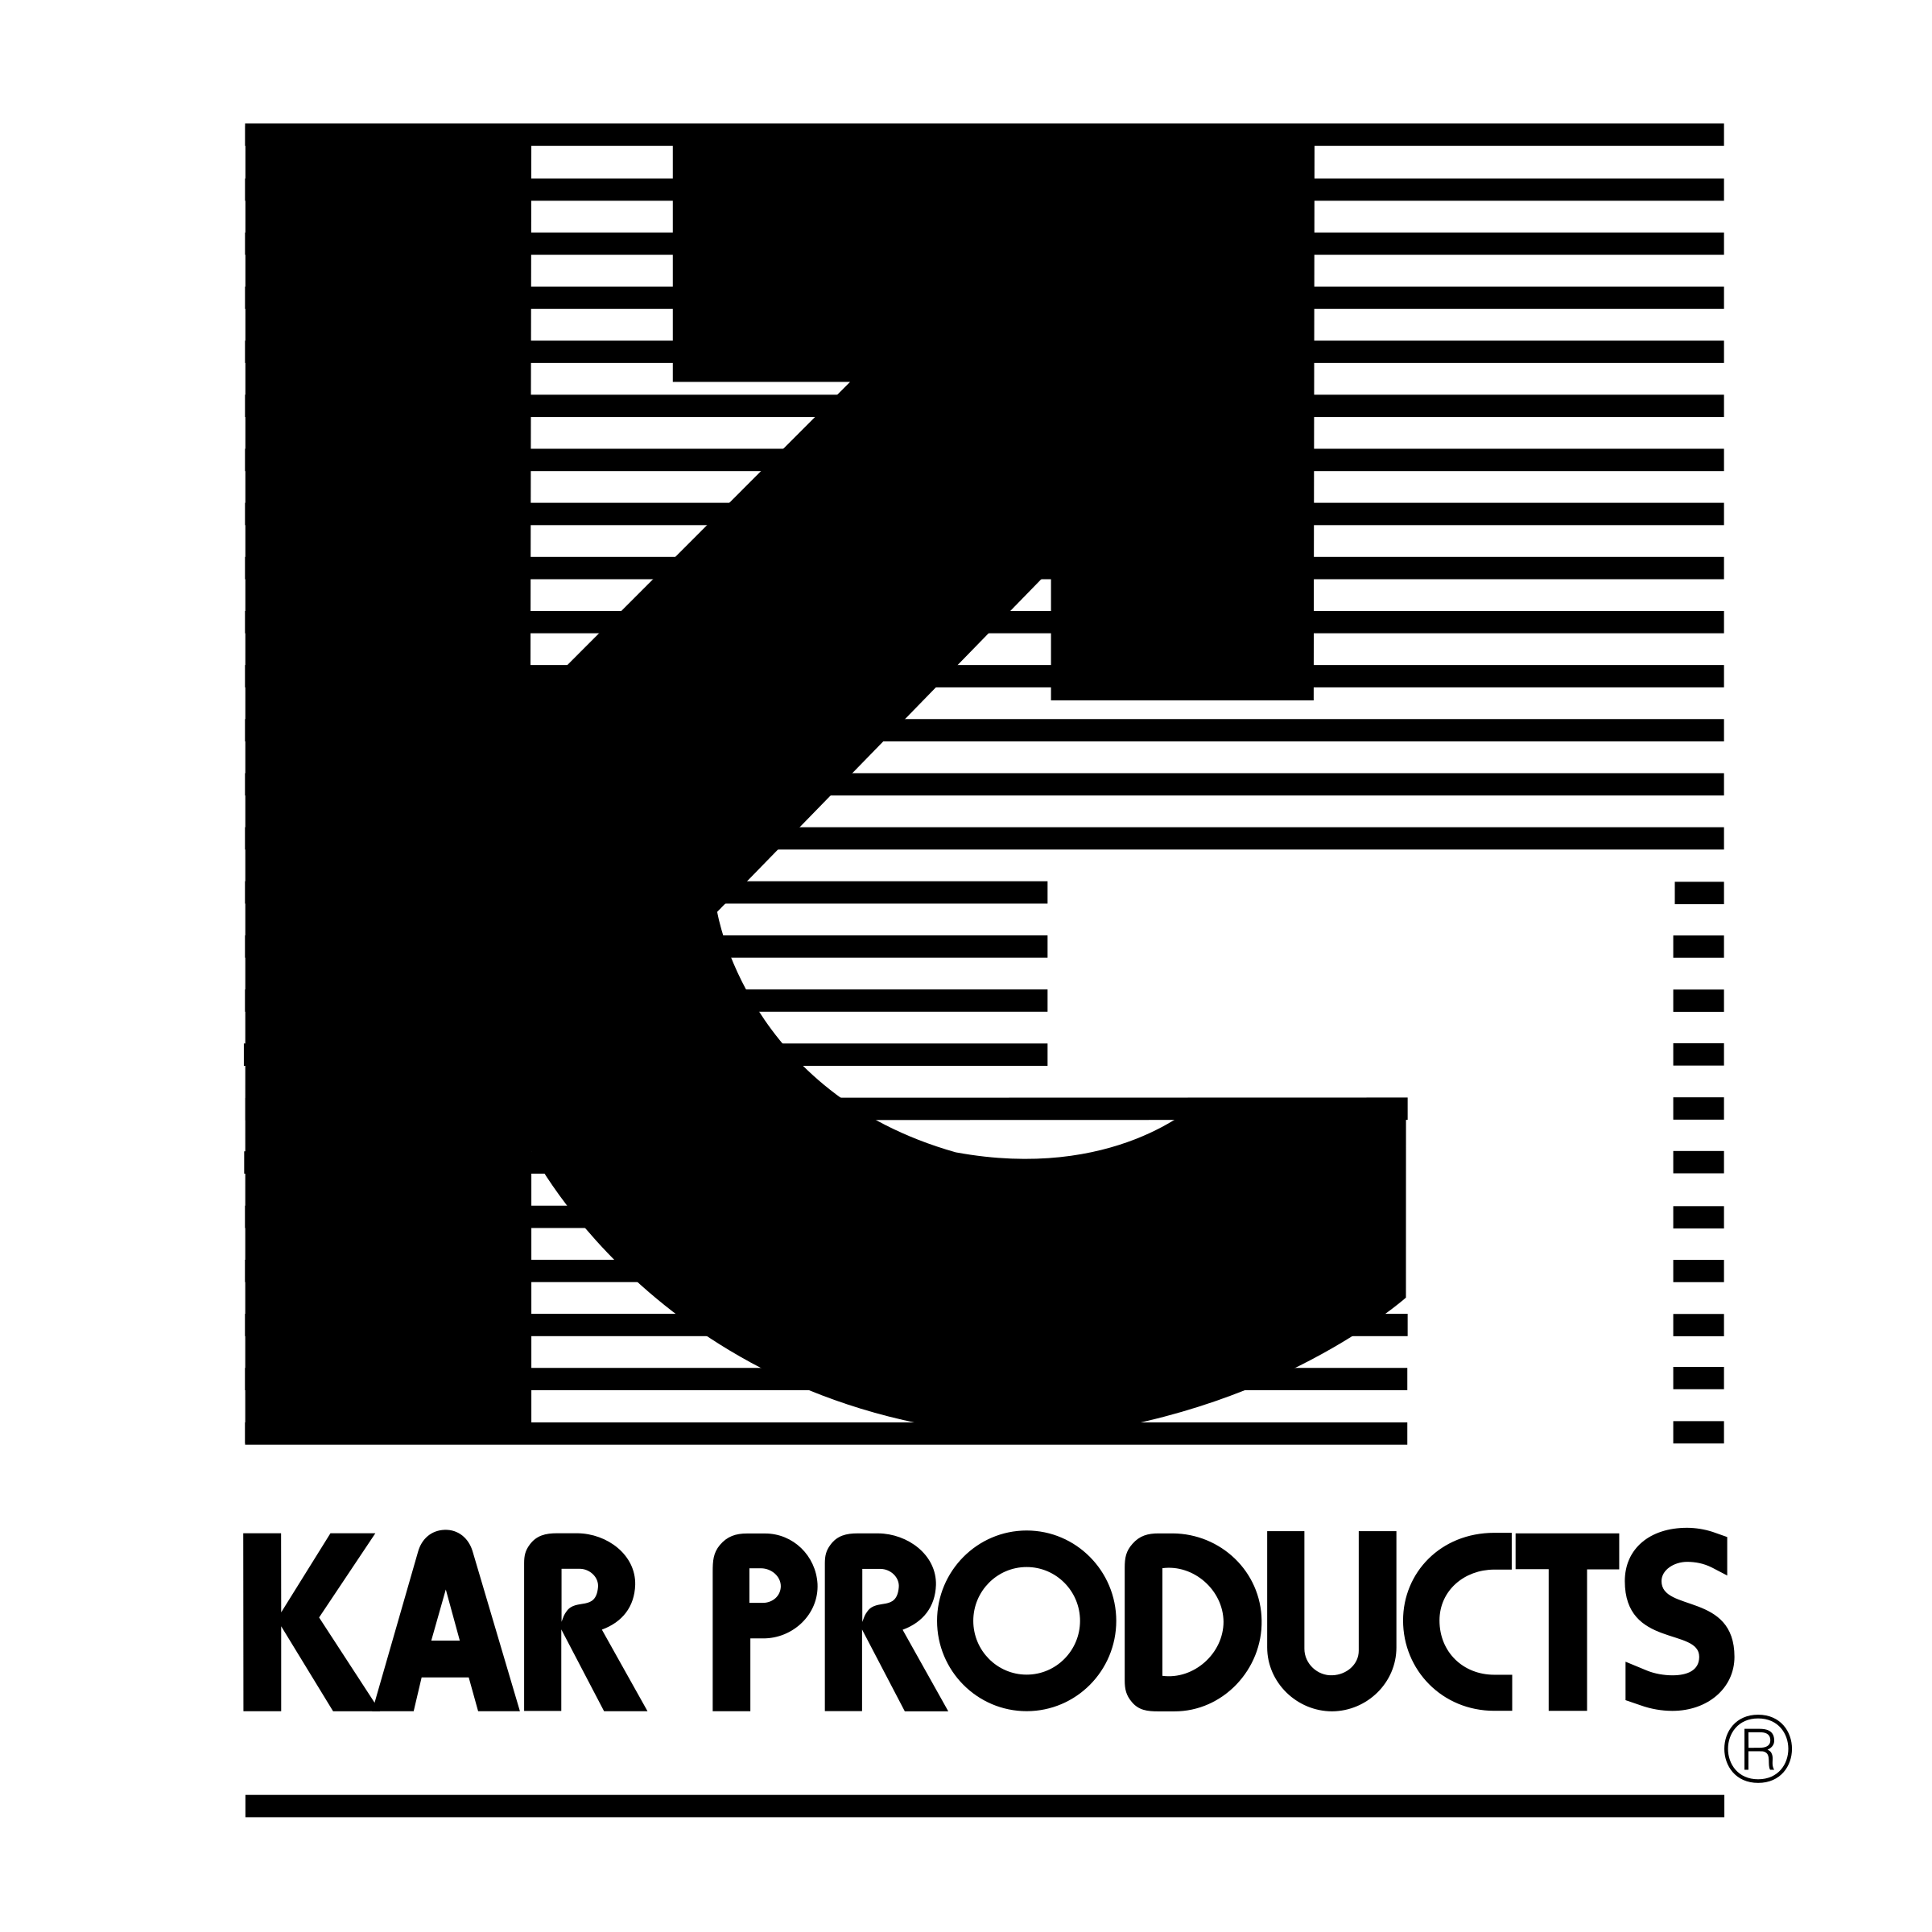 Kar Logo - Kar Products Logo PNG Transparent & SVG Vector - Freebie Supply